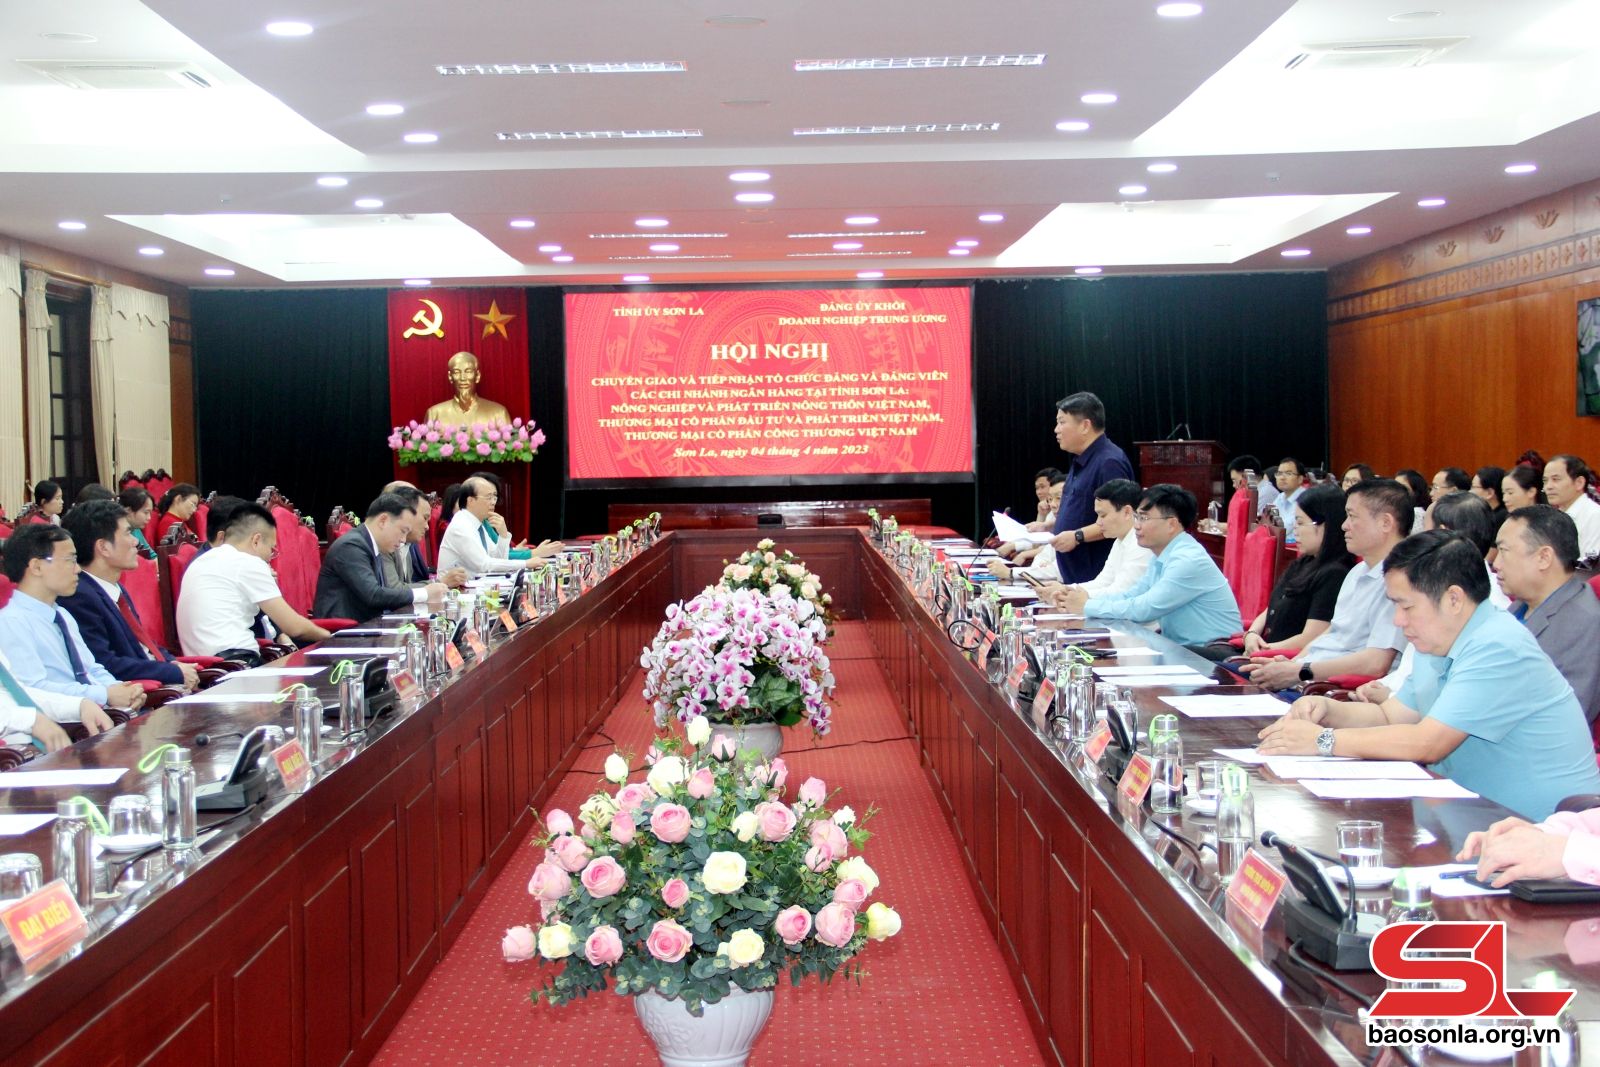 Hội nghị chuyển giao và tiếp nhận tổ chức đảng, đảng viên các chi nhánh ngân hàng thương mại tại tỉnh Sơn La.